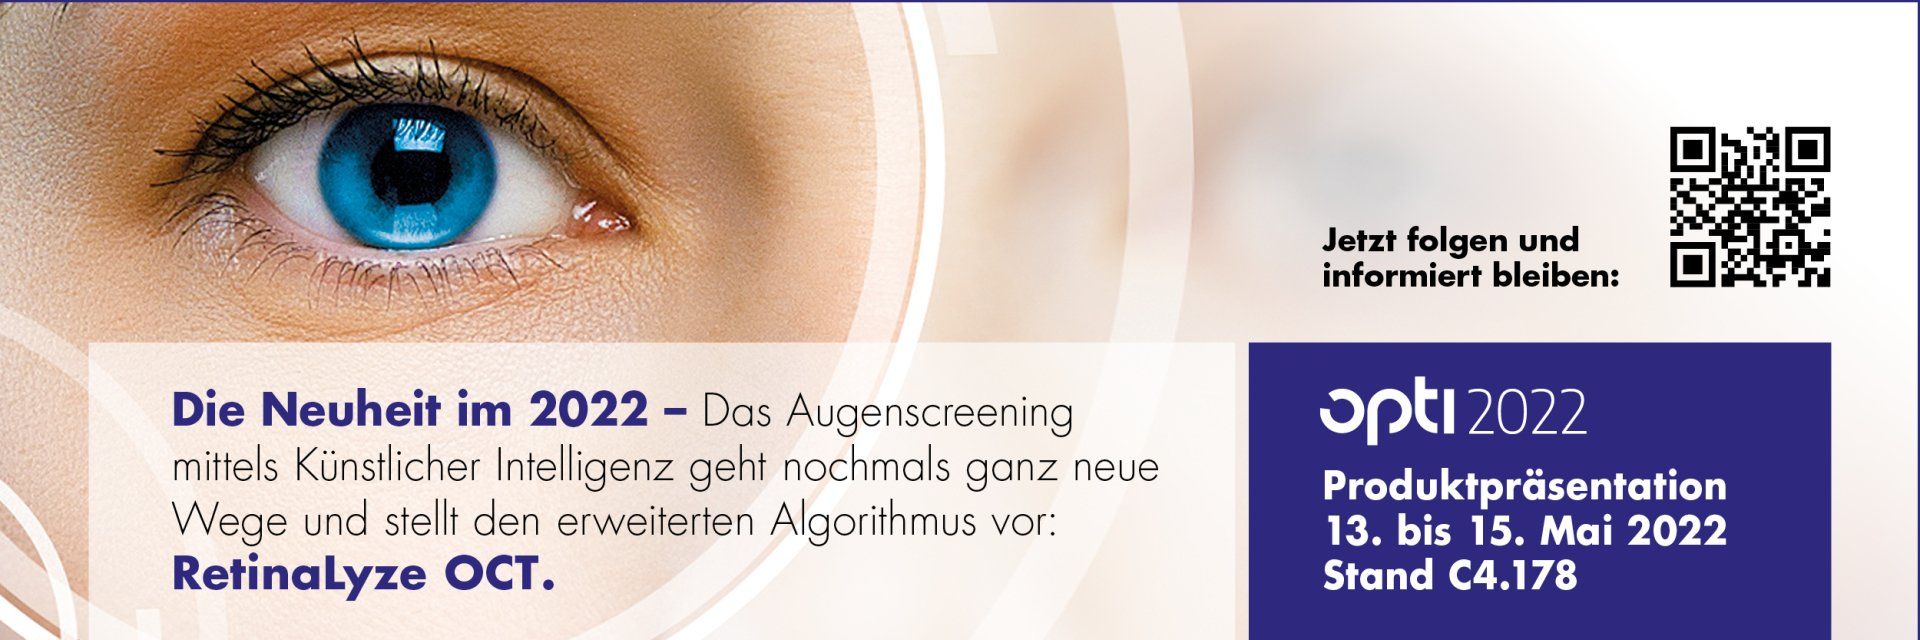 Augenscreening mittels Künstlicher Intelligenz neu auch mit OCT-Geräten vorzunehmen.